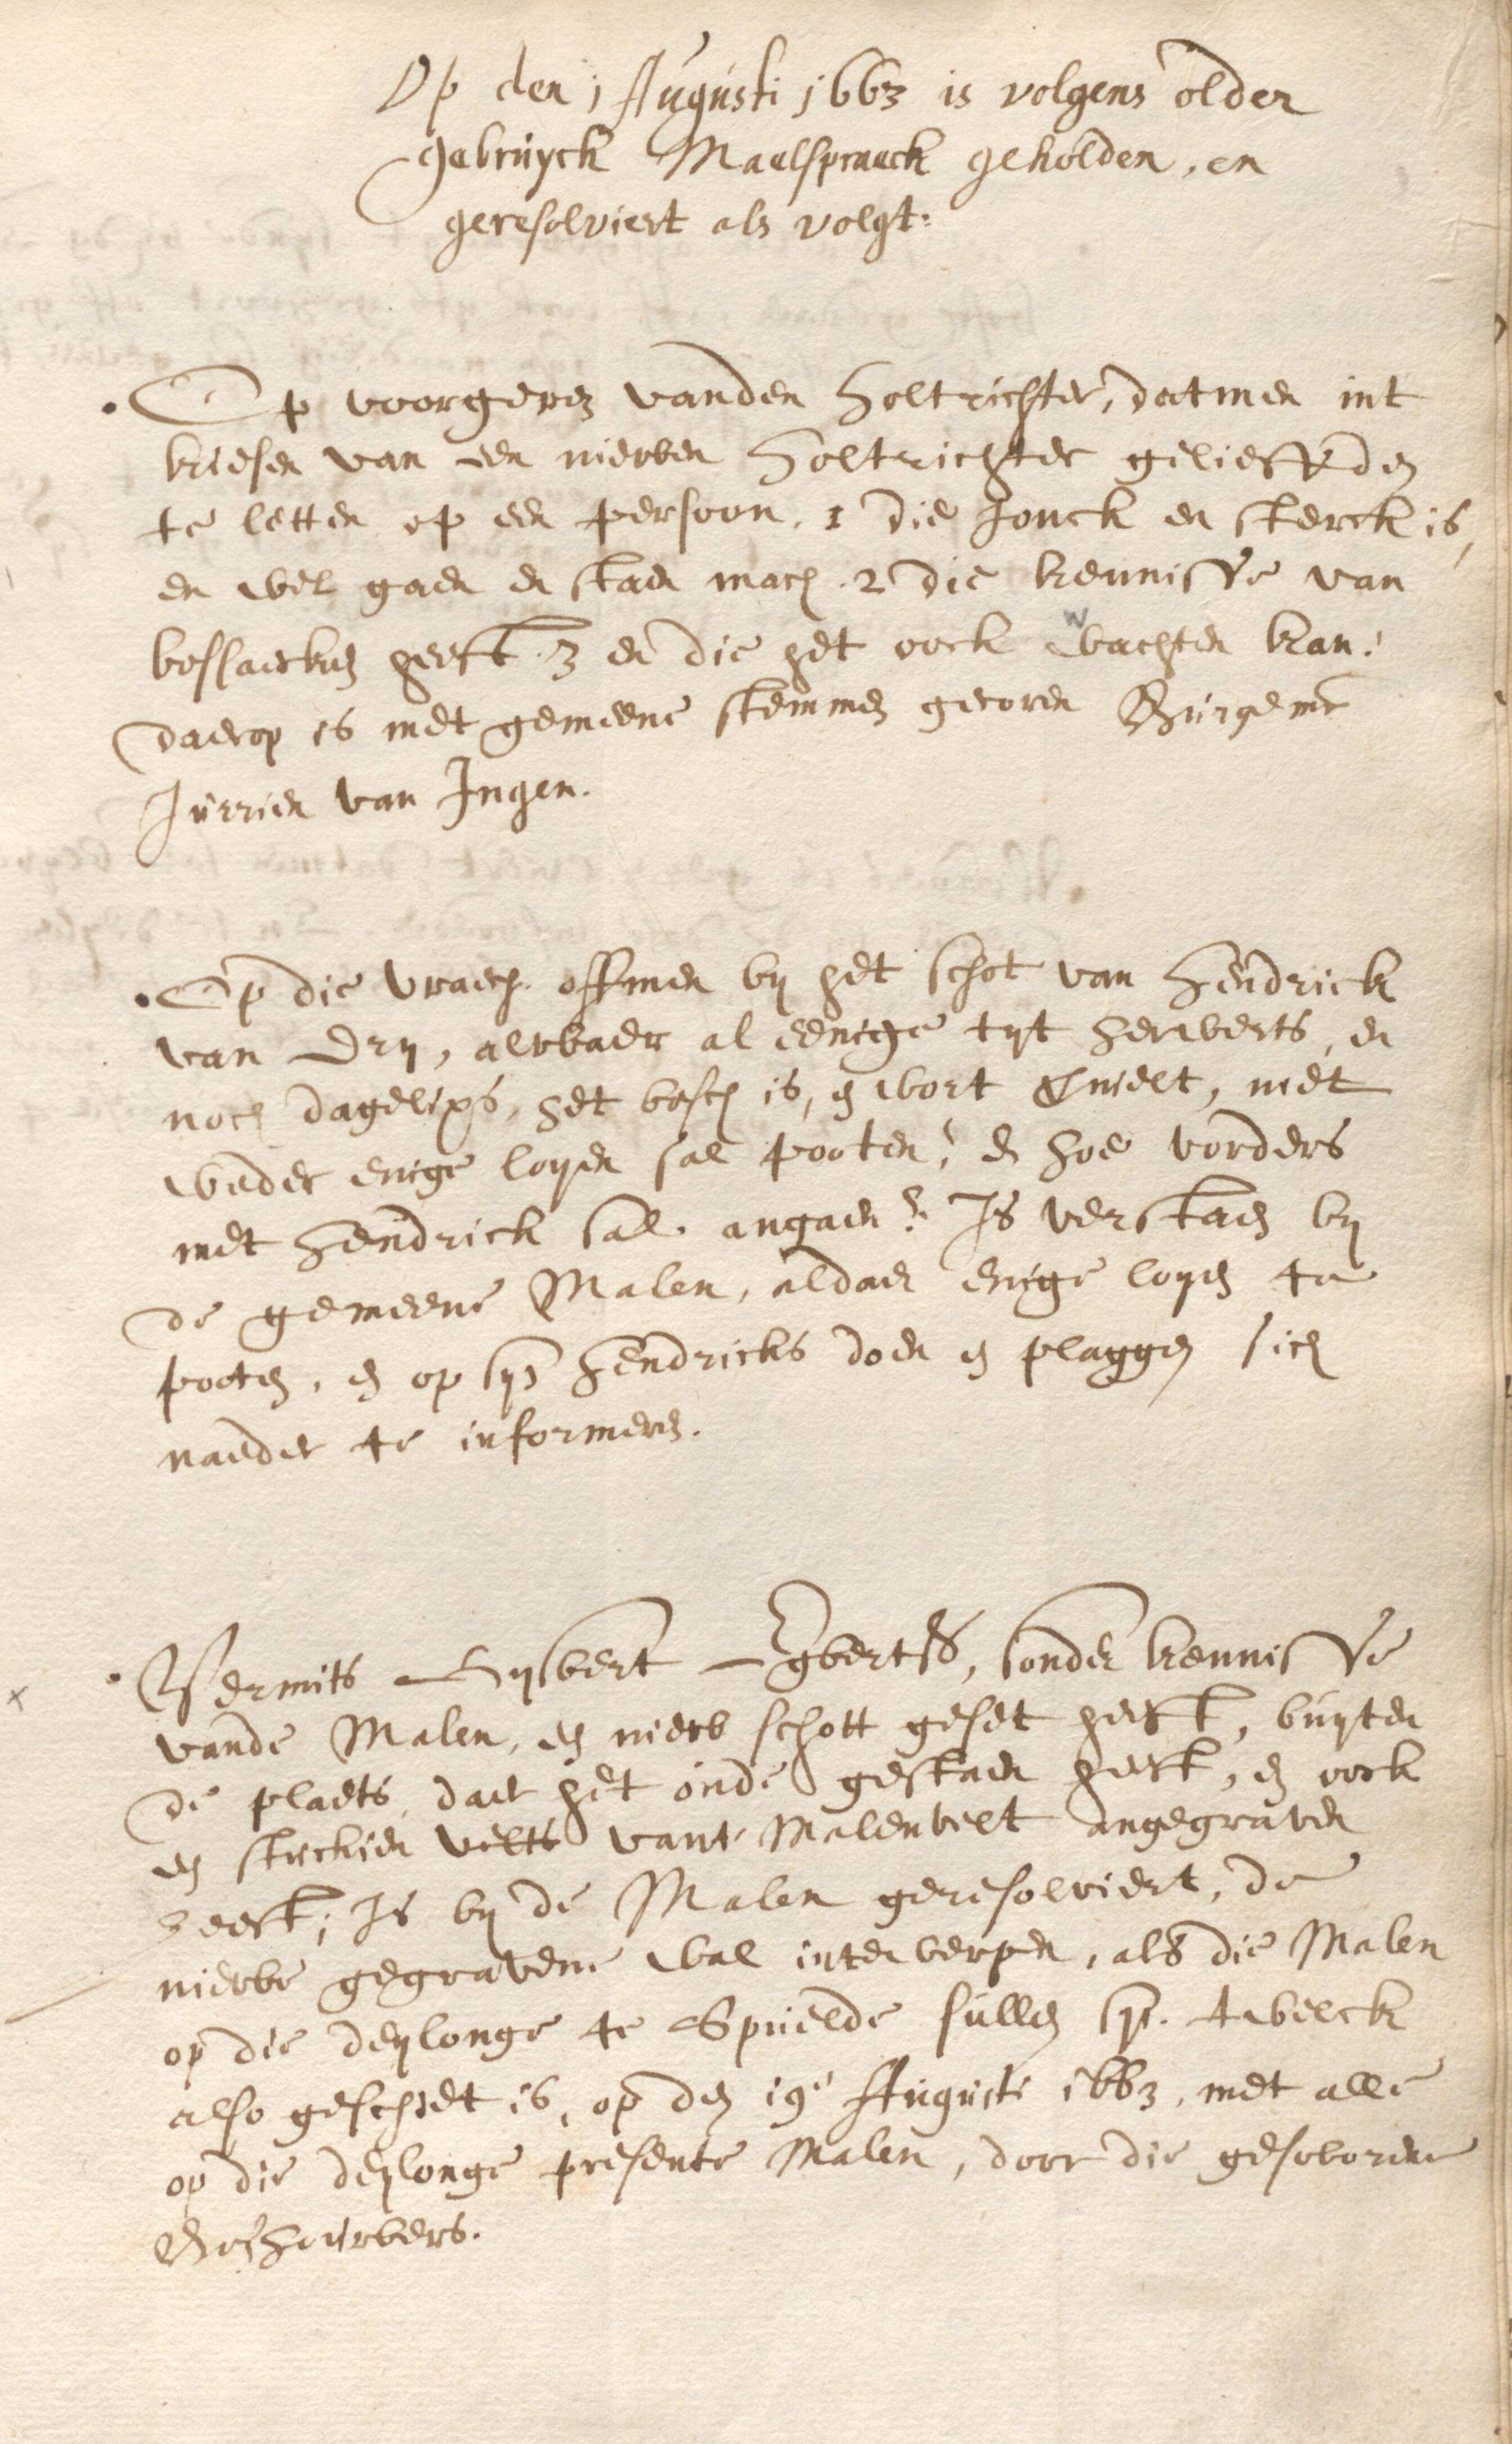 Pagina uit het resolutieboek van de Maalschap van het Speulderbos, 1663.